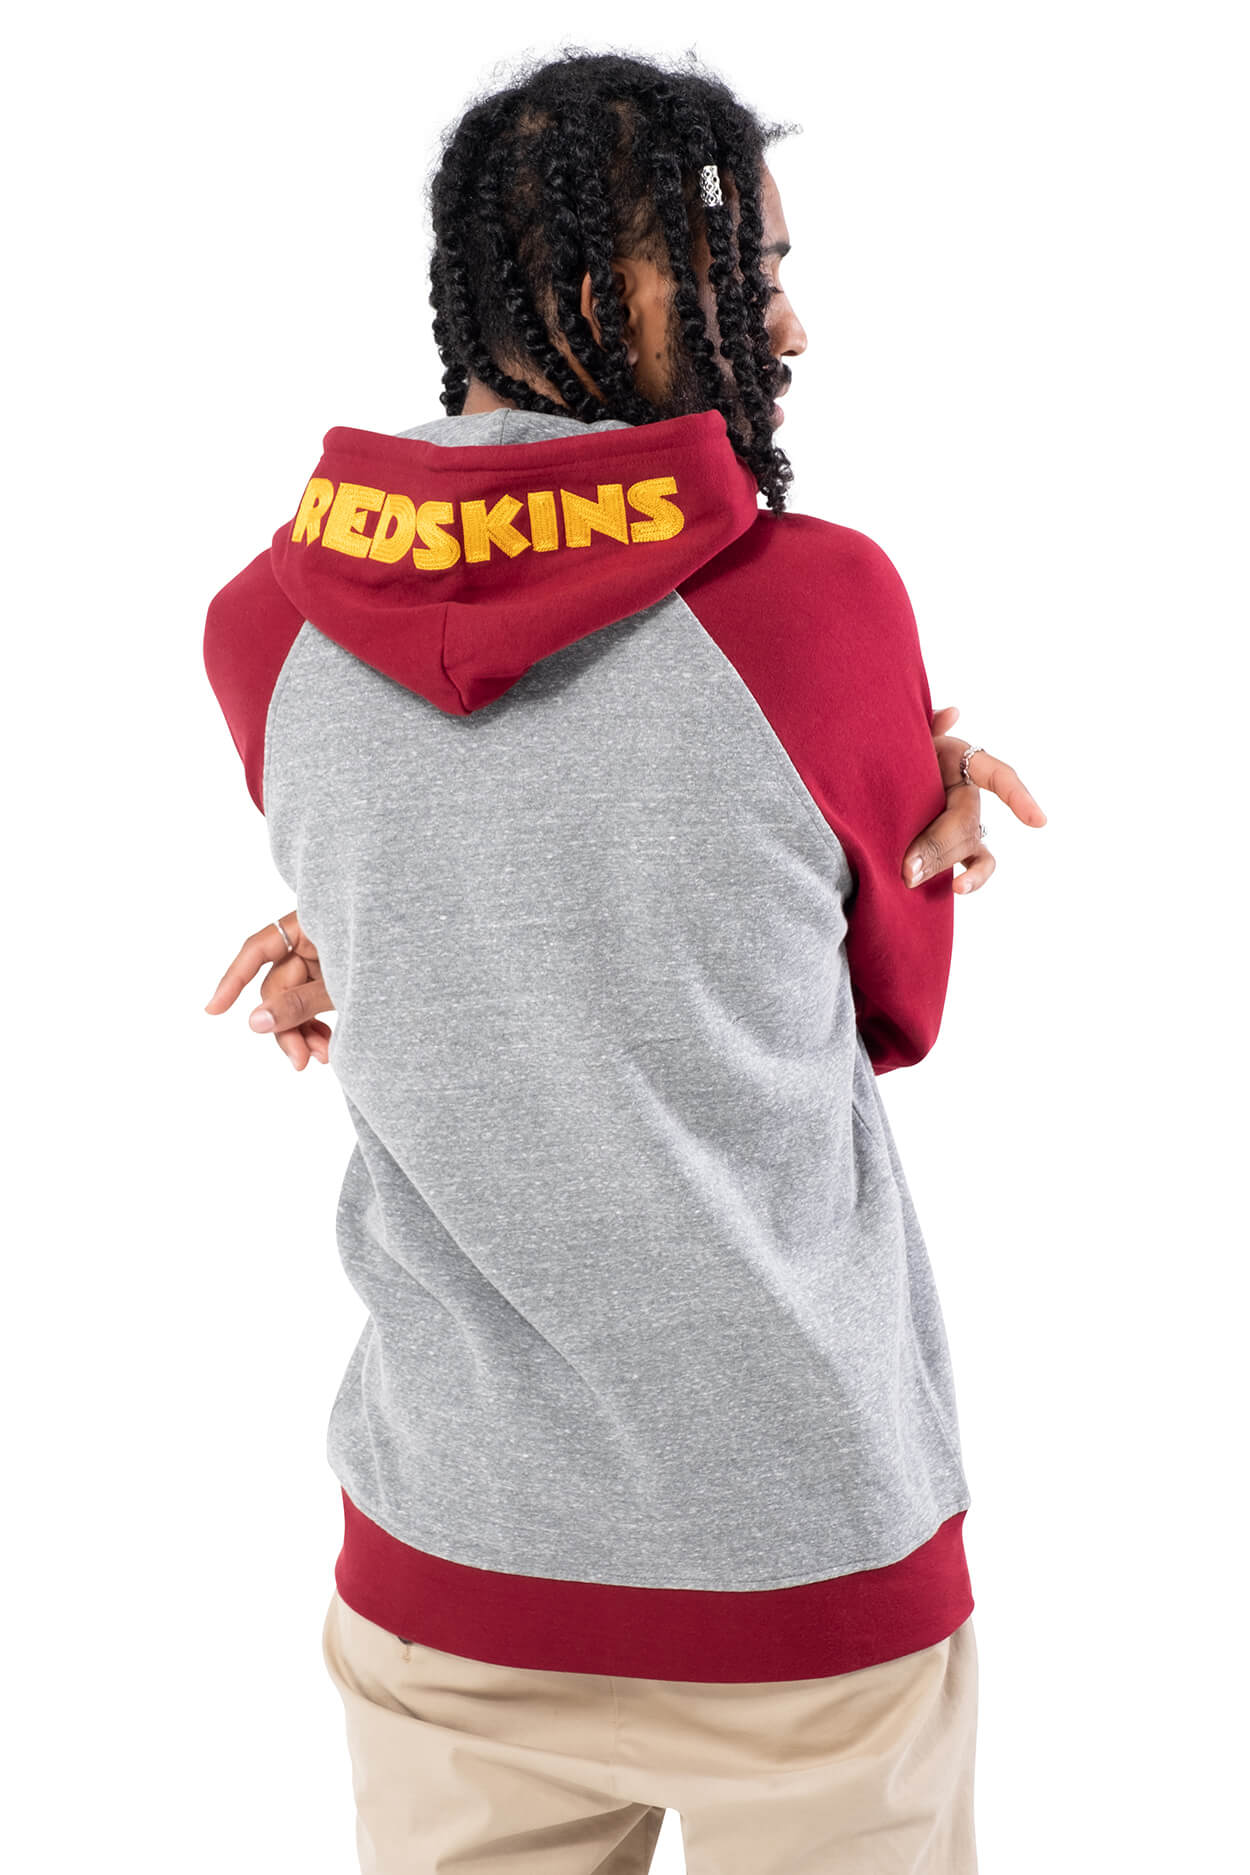 NFL Washington Redskins Men's Full Zip Hoodie|Washington Redskins